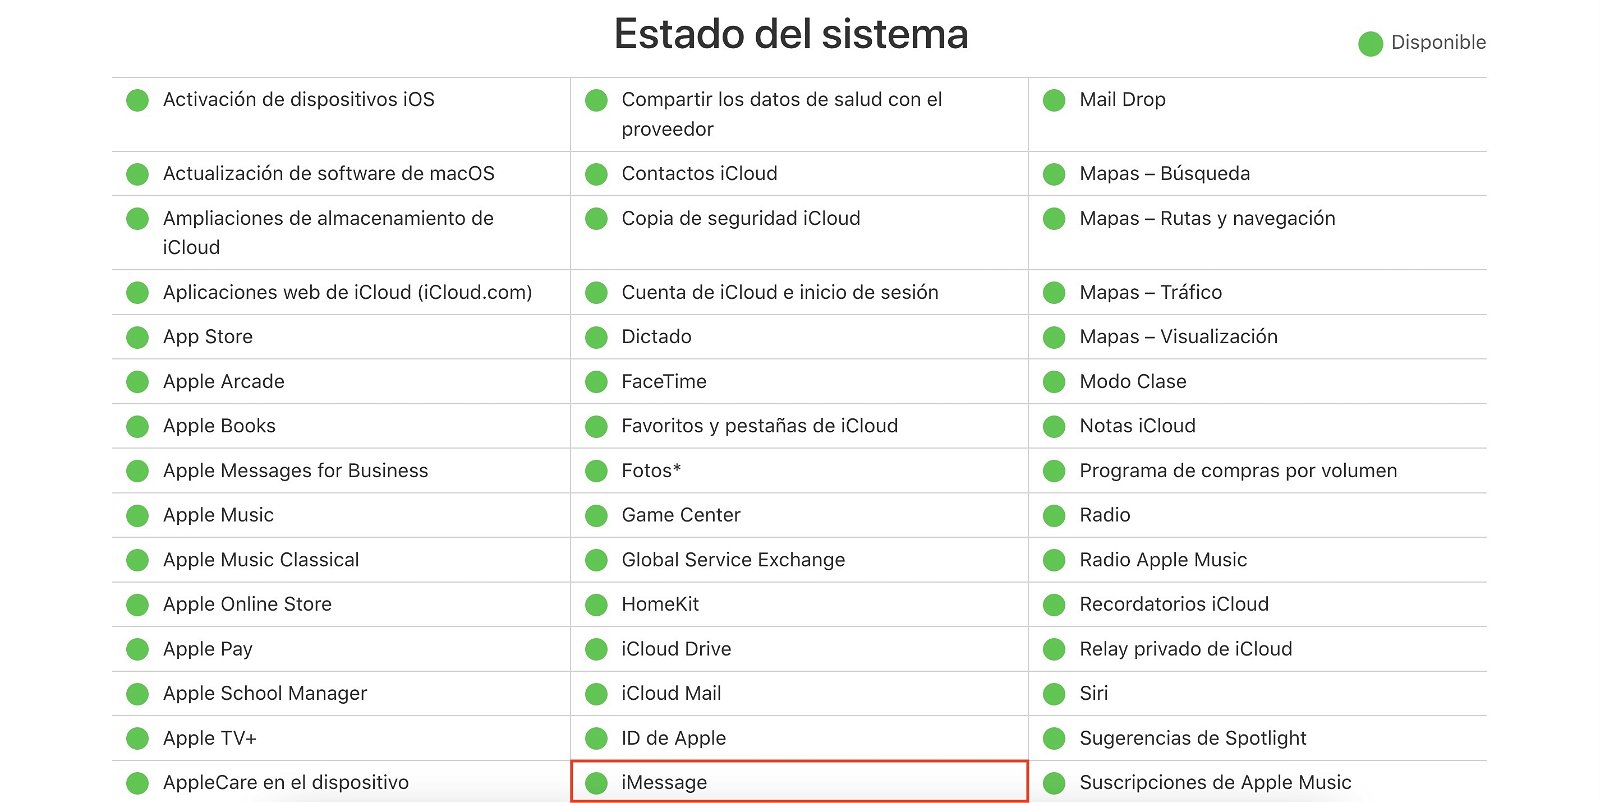 iMessage funcionando en el Estado de sistema de Apple